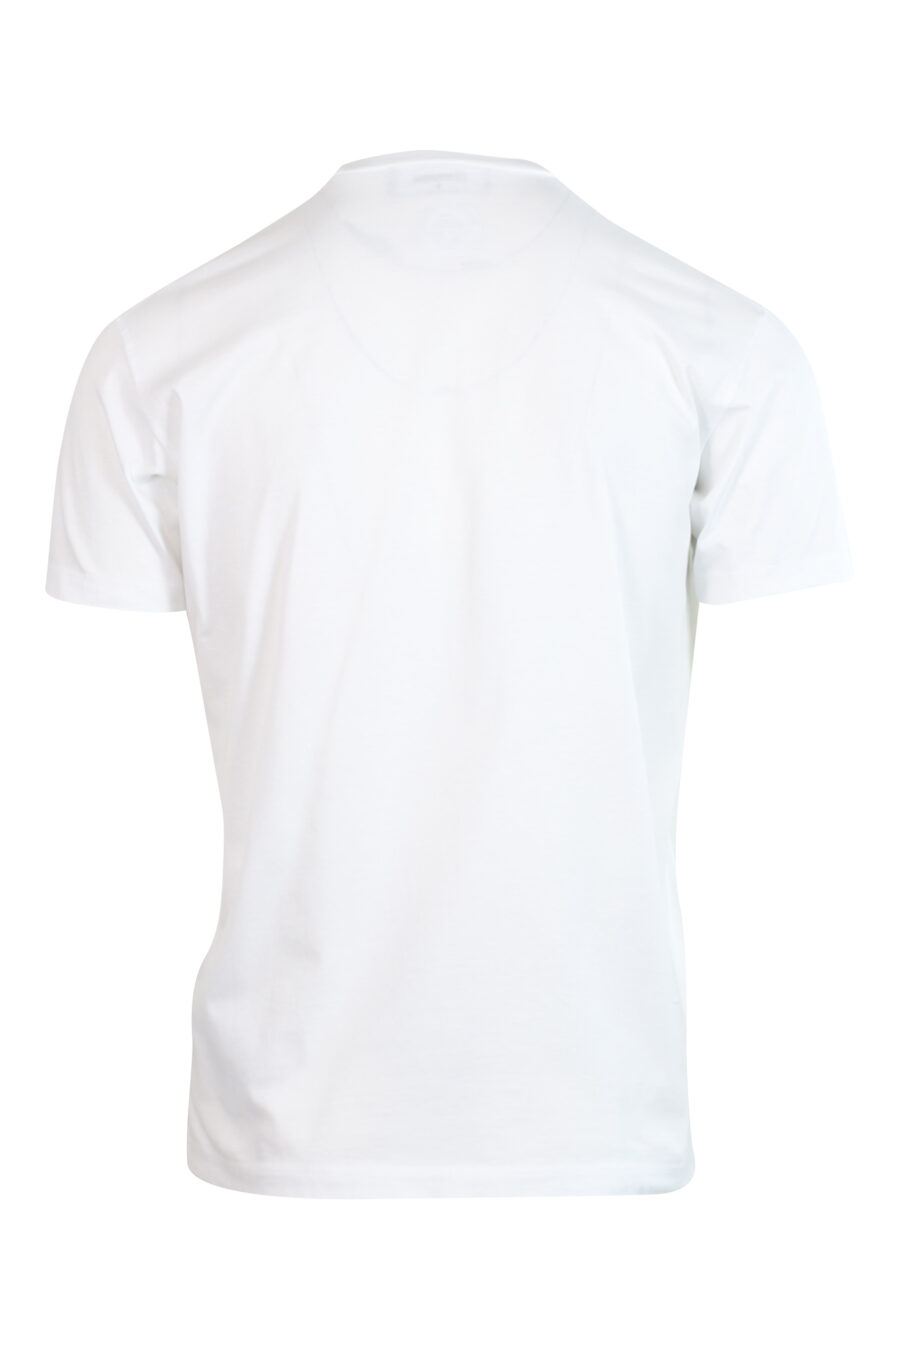 Camiseta blanca con maxilogo "icon pixeled" turquesa y fucsia - 8052134981191 2